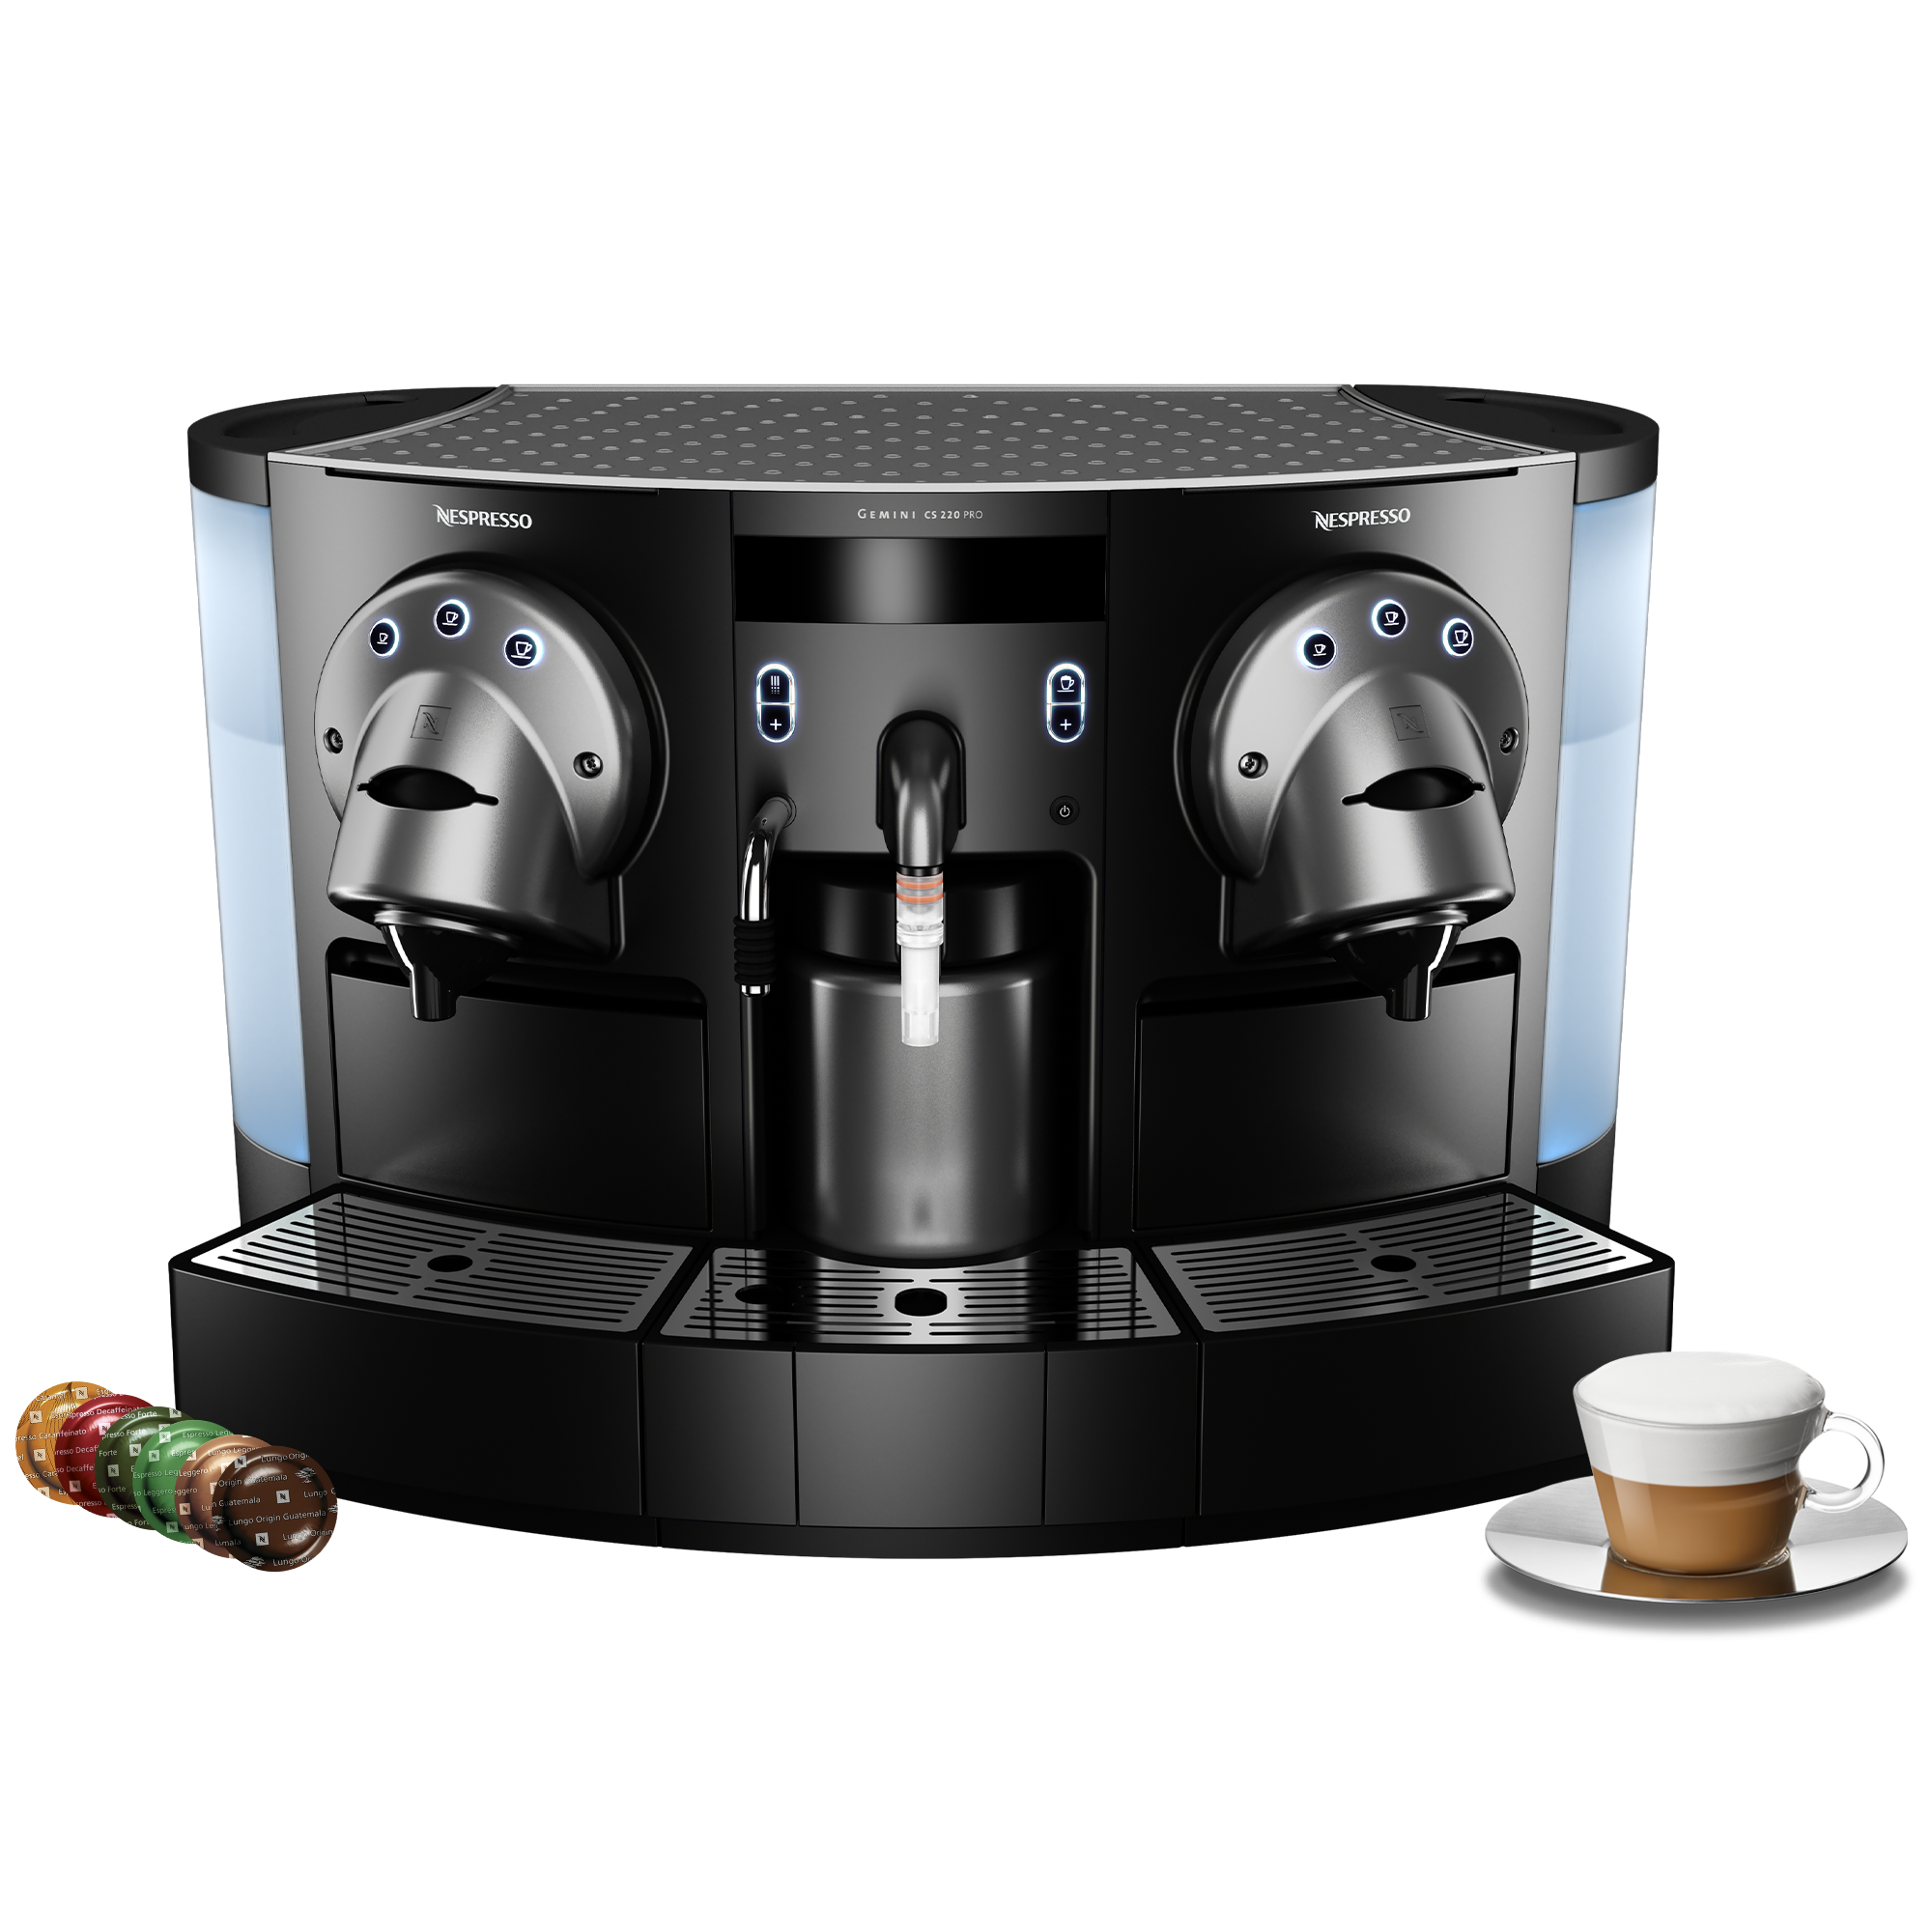 NESPRESSO GEMINI CS220 PRO COMMERCIAL COFFEE MAKER Espresso 